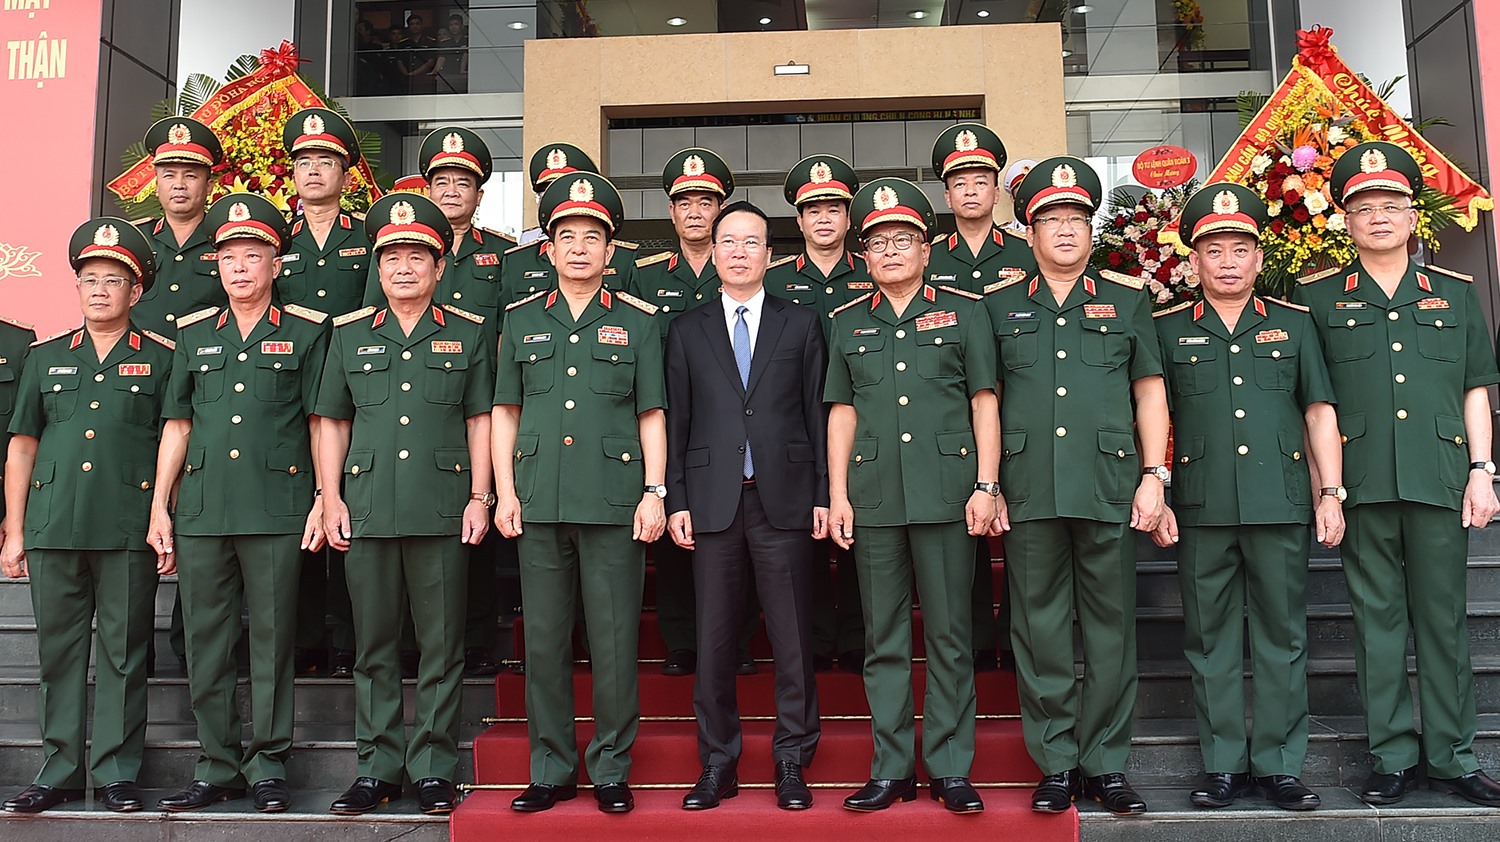 Chủ tịch nước tin tưởng, tình báo quốc phòng Việt Nam sẽ ngày càng lớn mạnh, trưởng thành, hoàn thành xuất sắc mọi nhiệm vụ được giao, luôn xứng đáng là lực lượng trọng yếu, đặc biệt tin cậy của Đảng, Nhà nước, quân đội và nhân dân. Ảnh: VGP